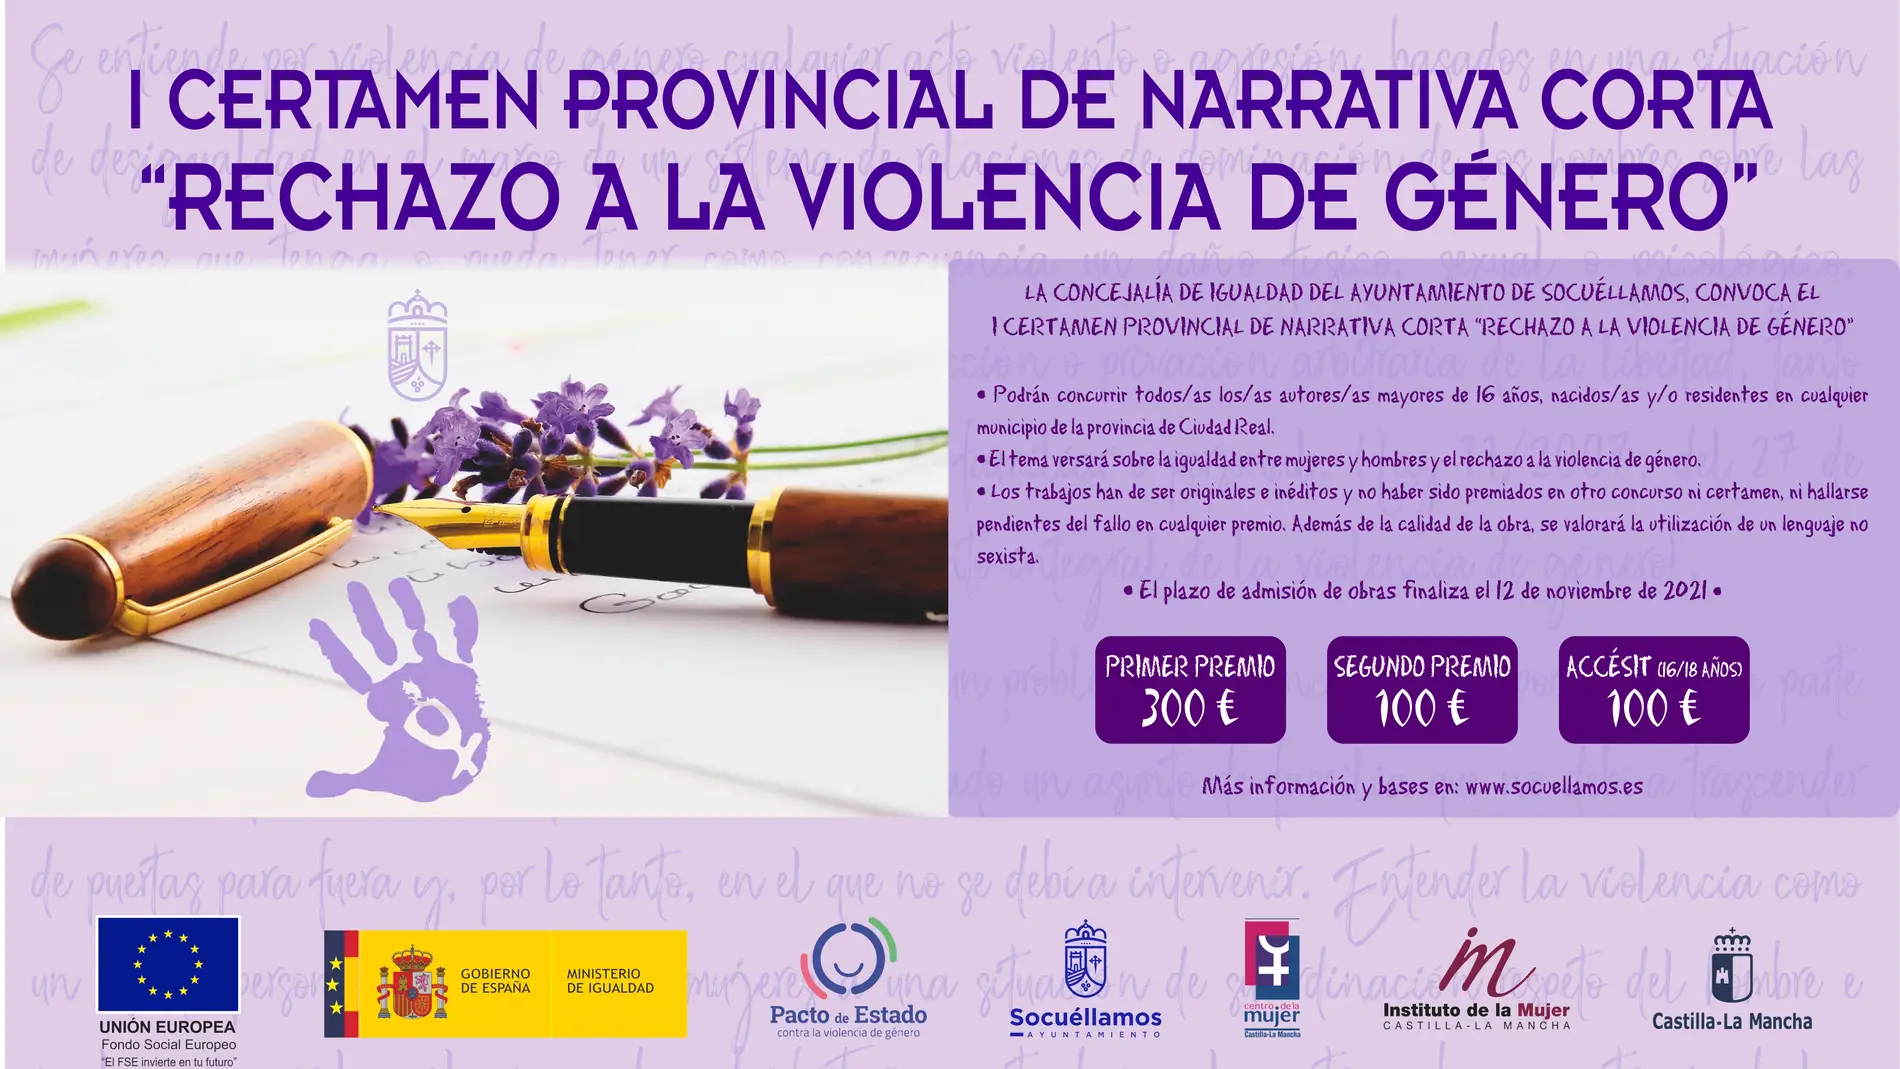 Socuéllamos convoca el I Certamen Provincial de narrativa corta “Rechazo a la Violencia de Género”